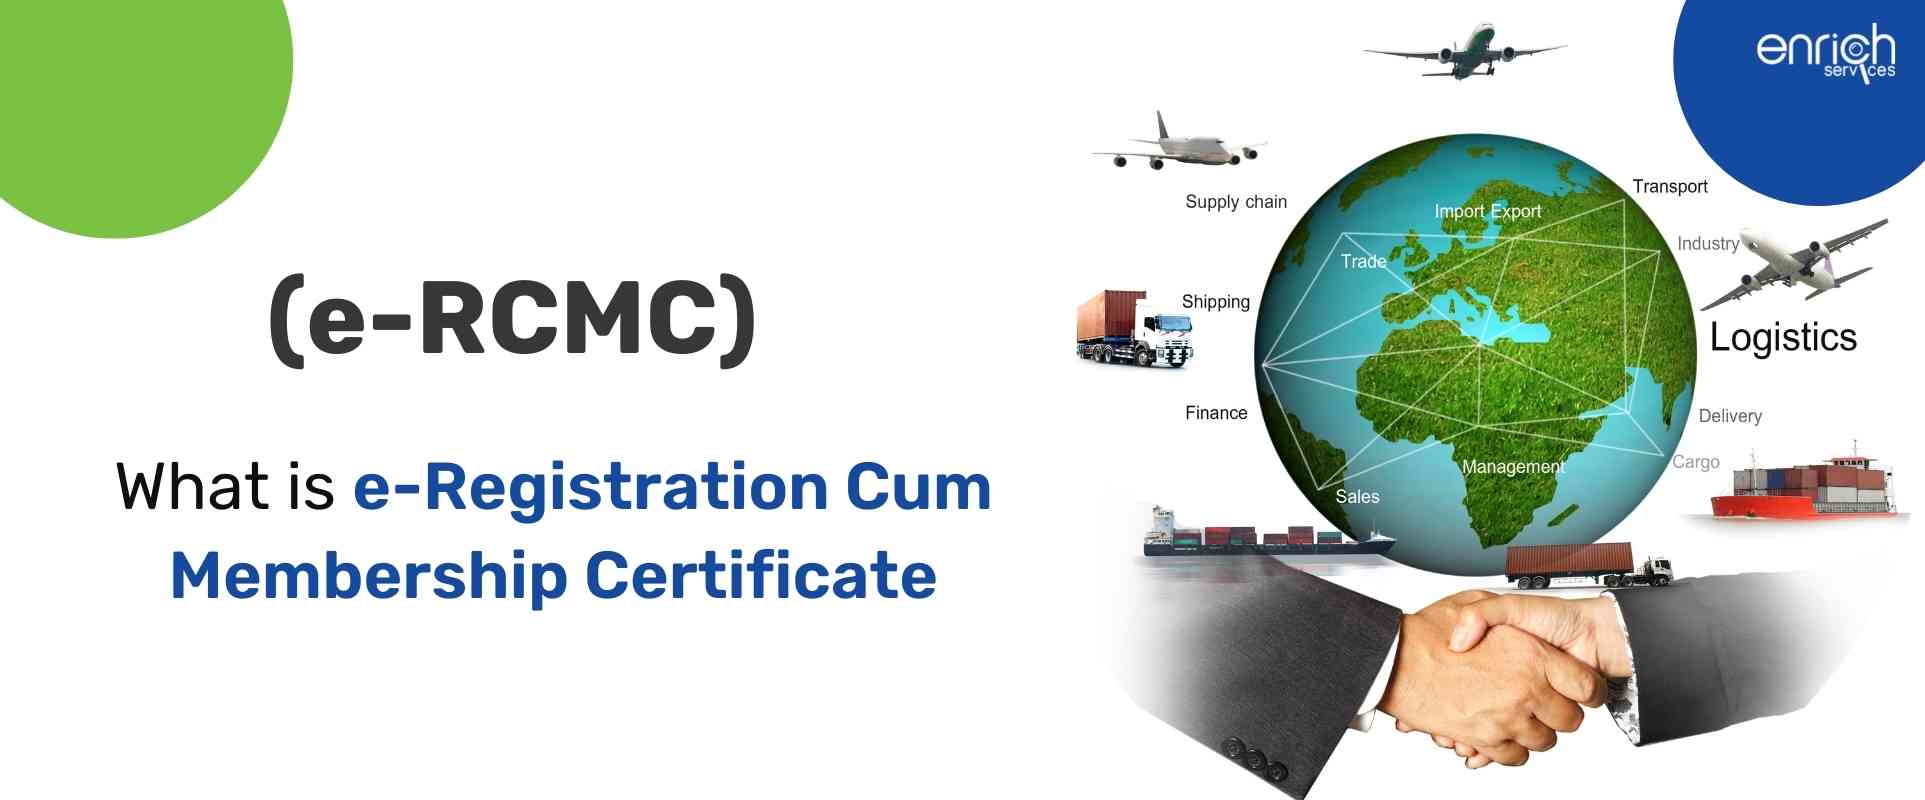 What is e-Registration Cum Membership Certificate (e-RCMC)